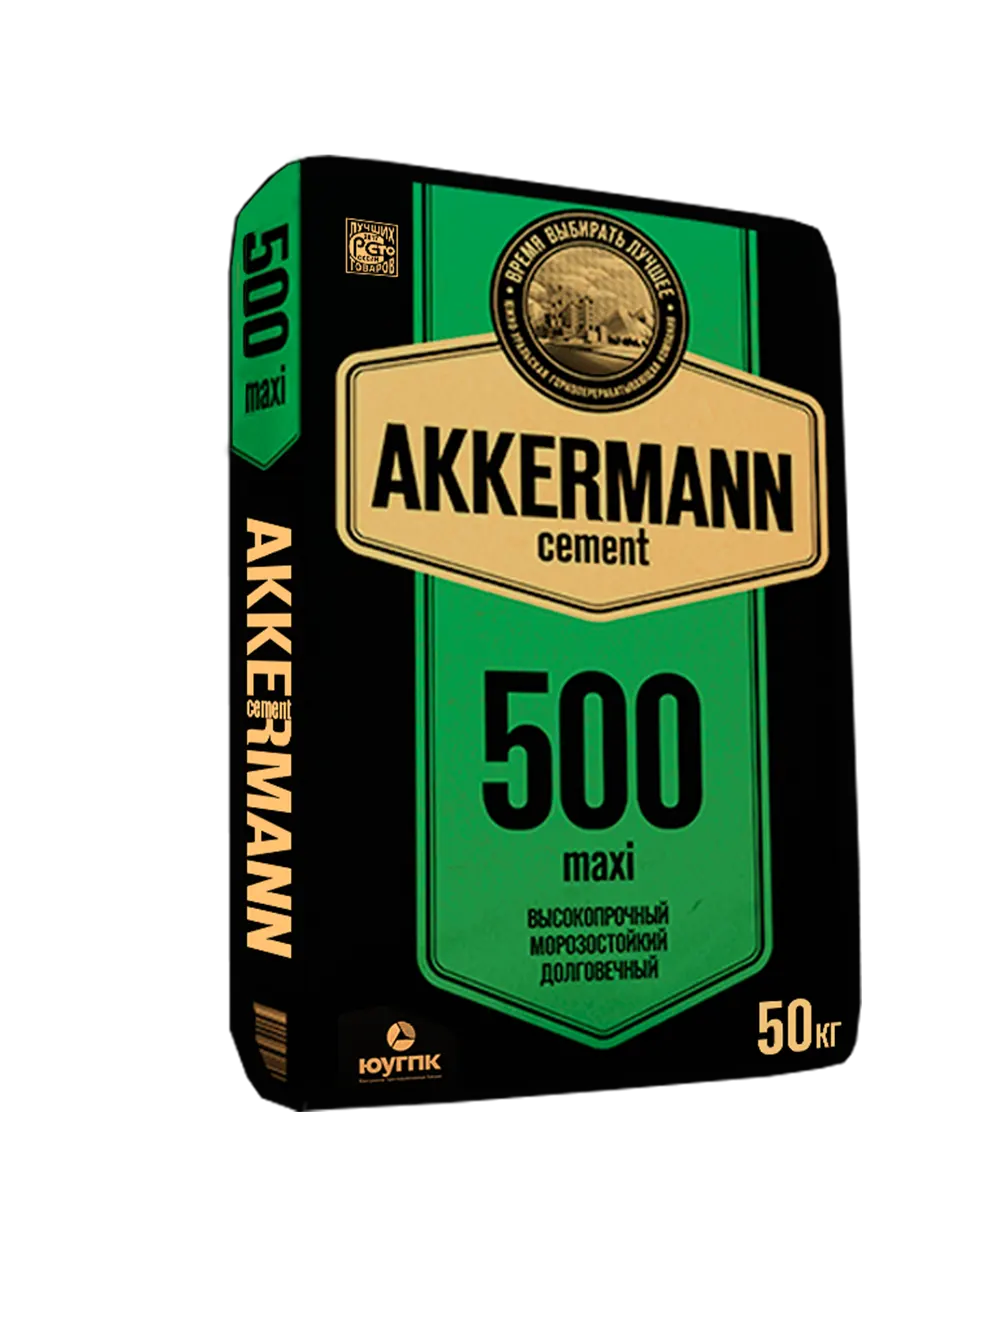 akkerman2